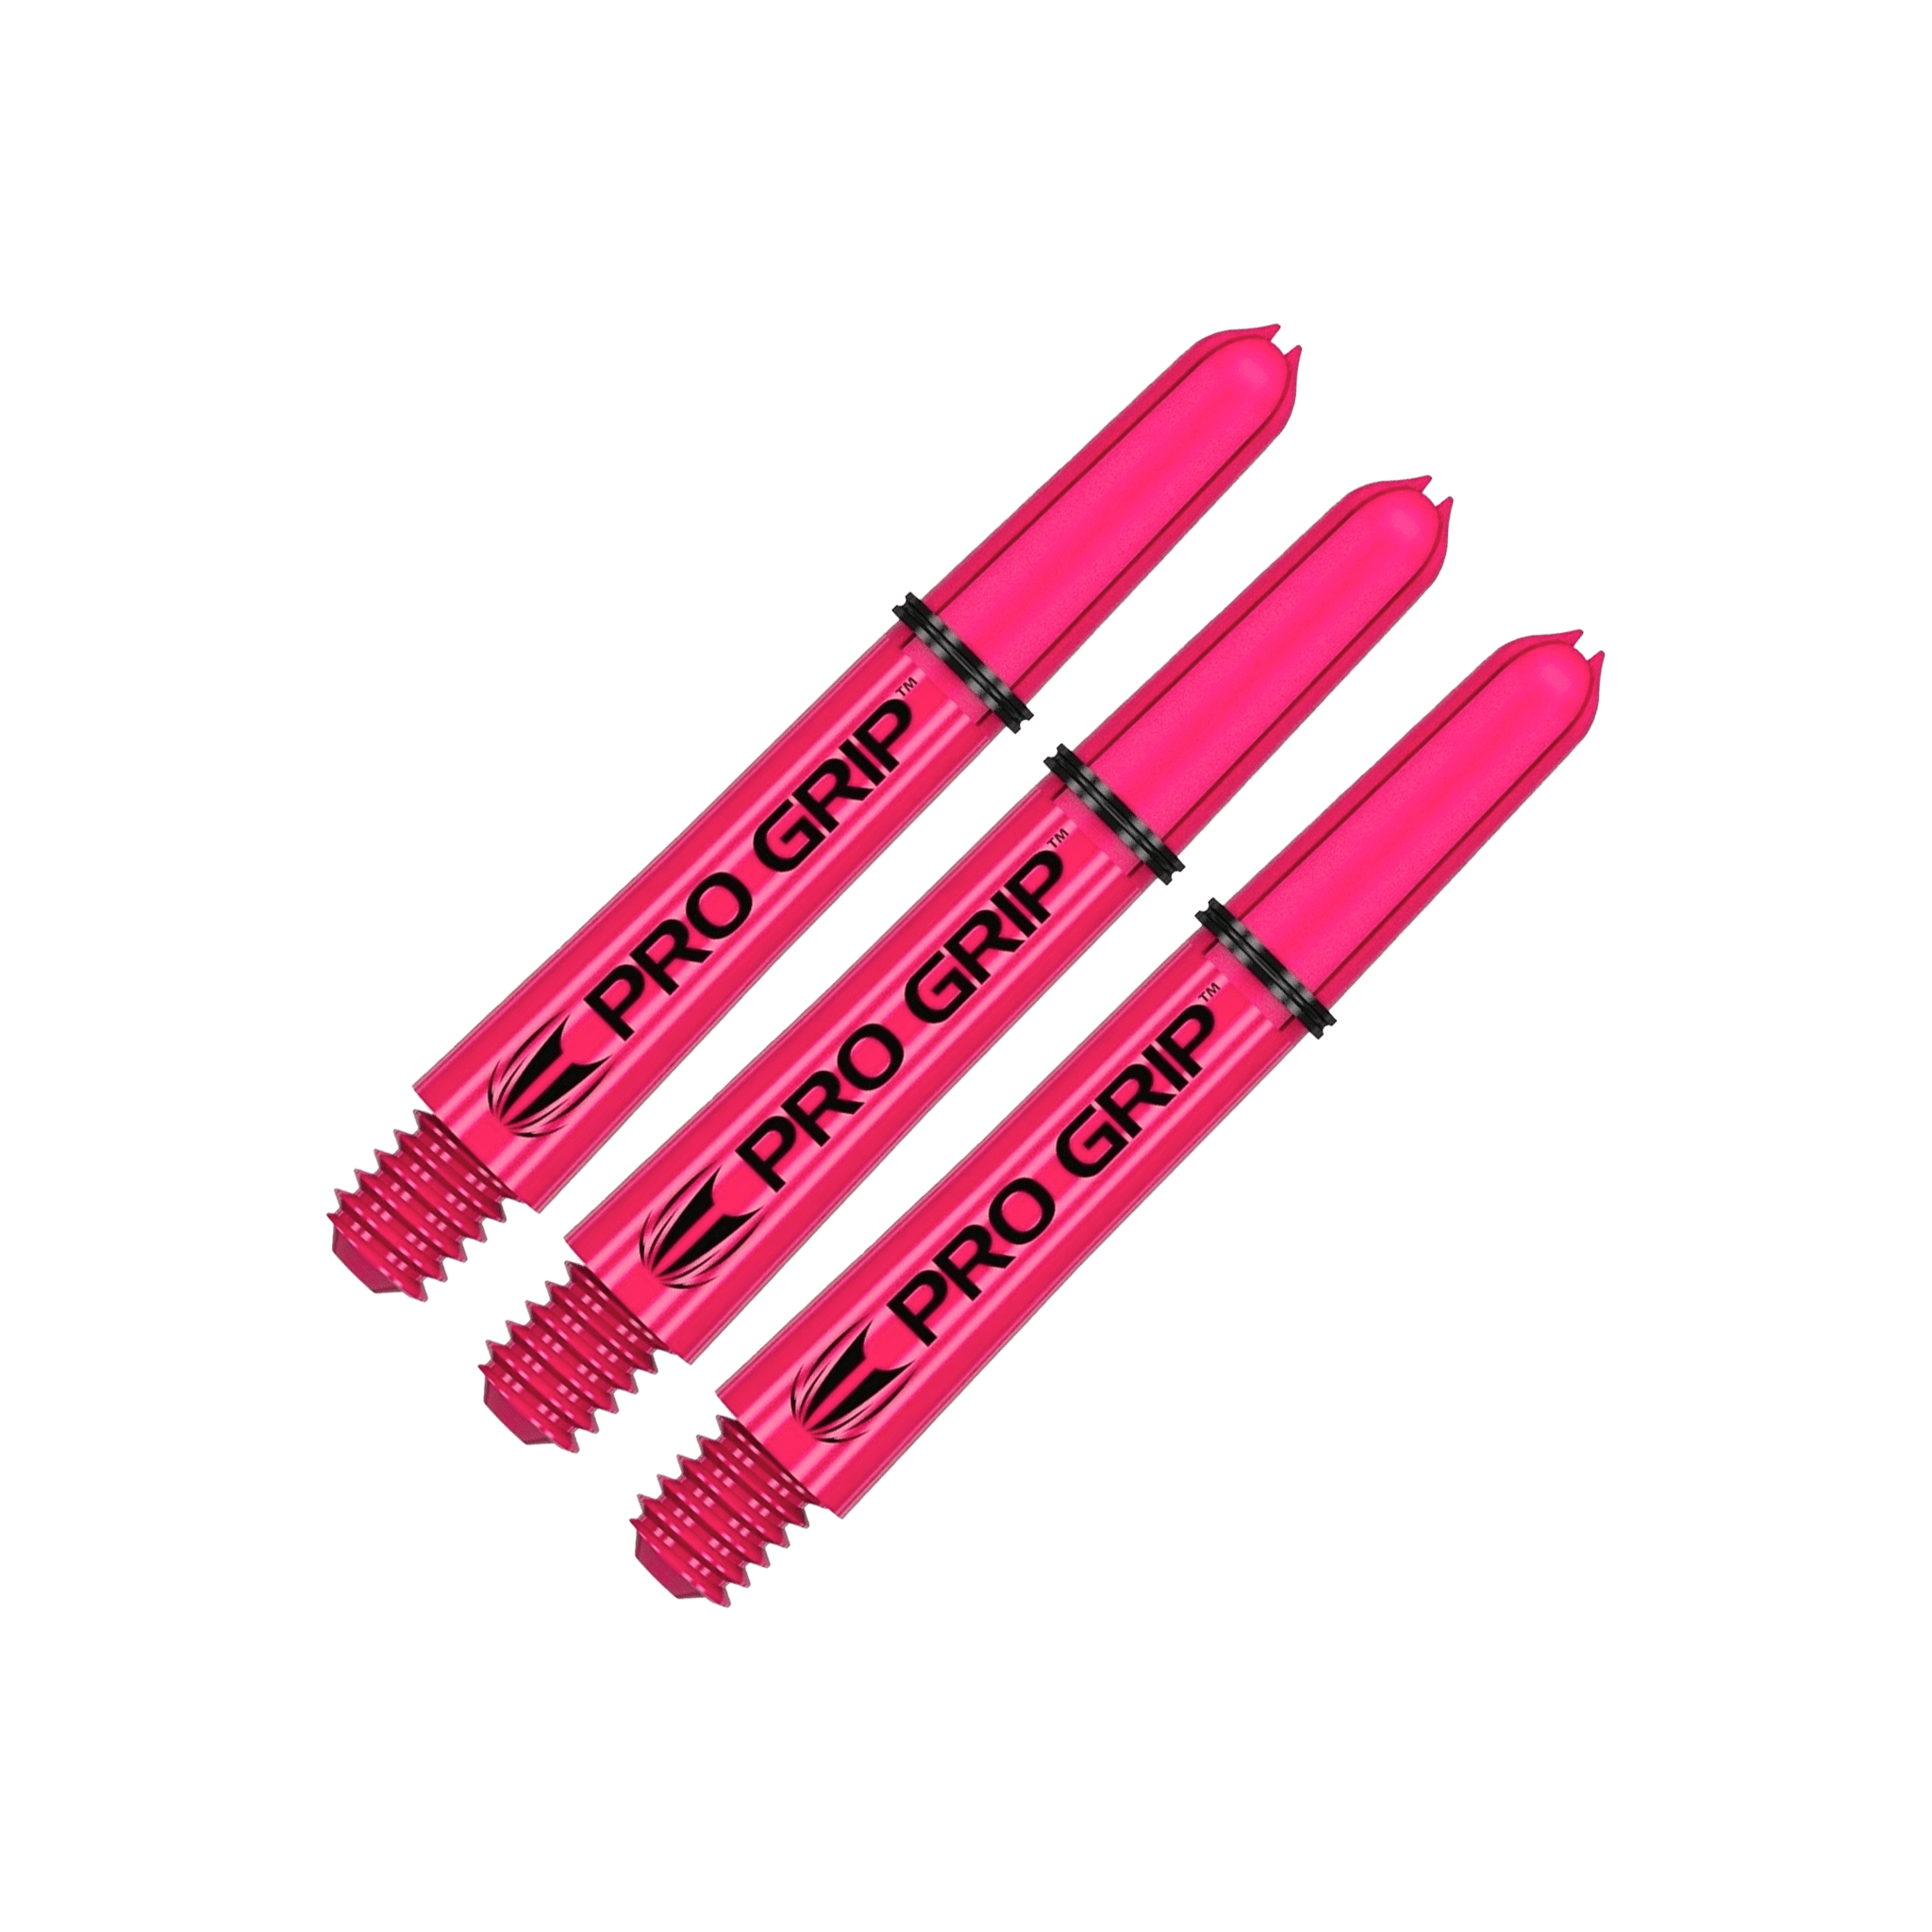 Target Pro Grip Multi Pack - Nylon Dart Shafts (3 Sets) Pink / Short (34mm) Shafts